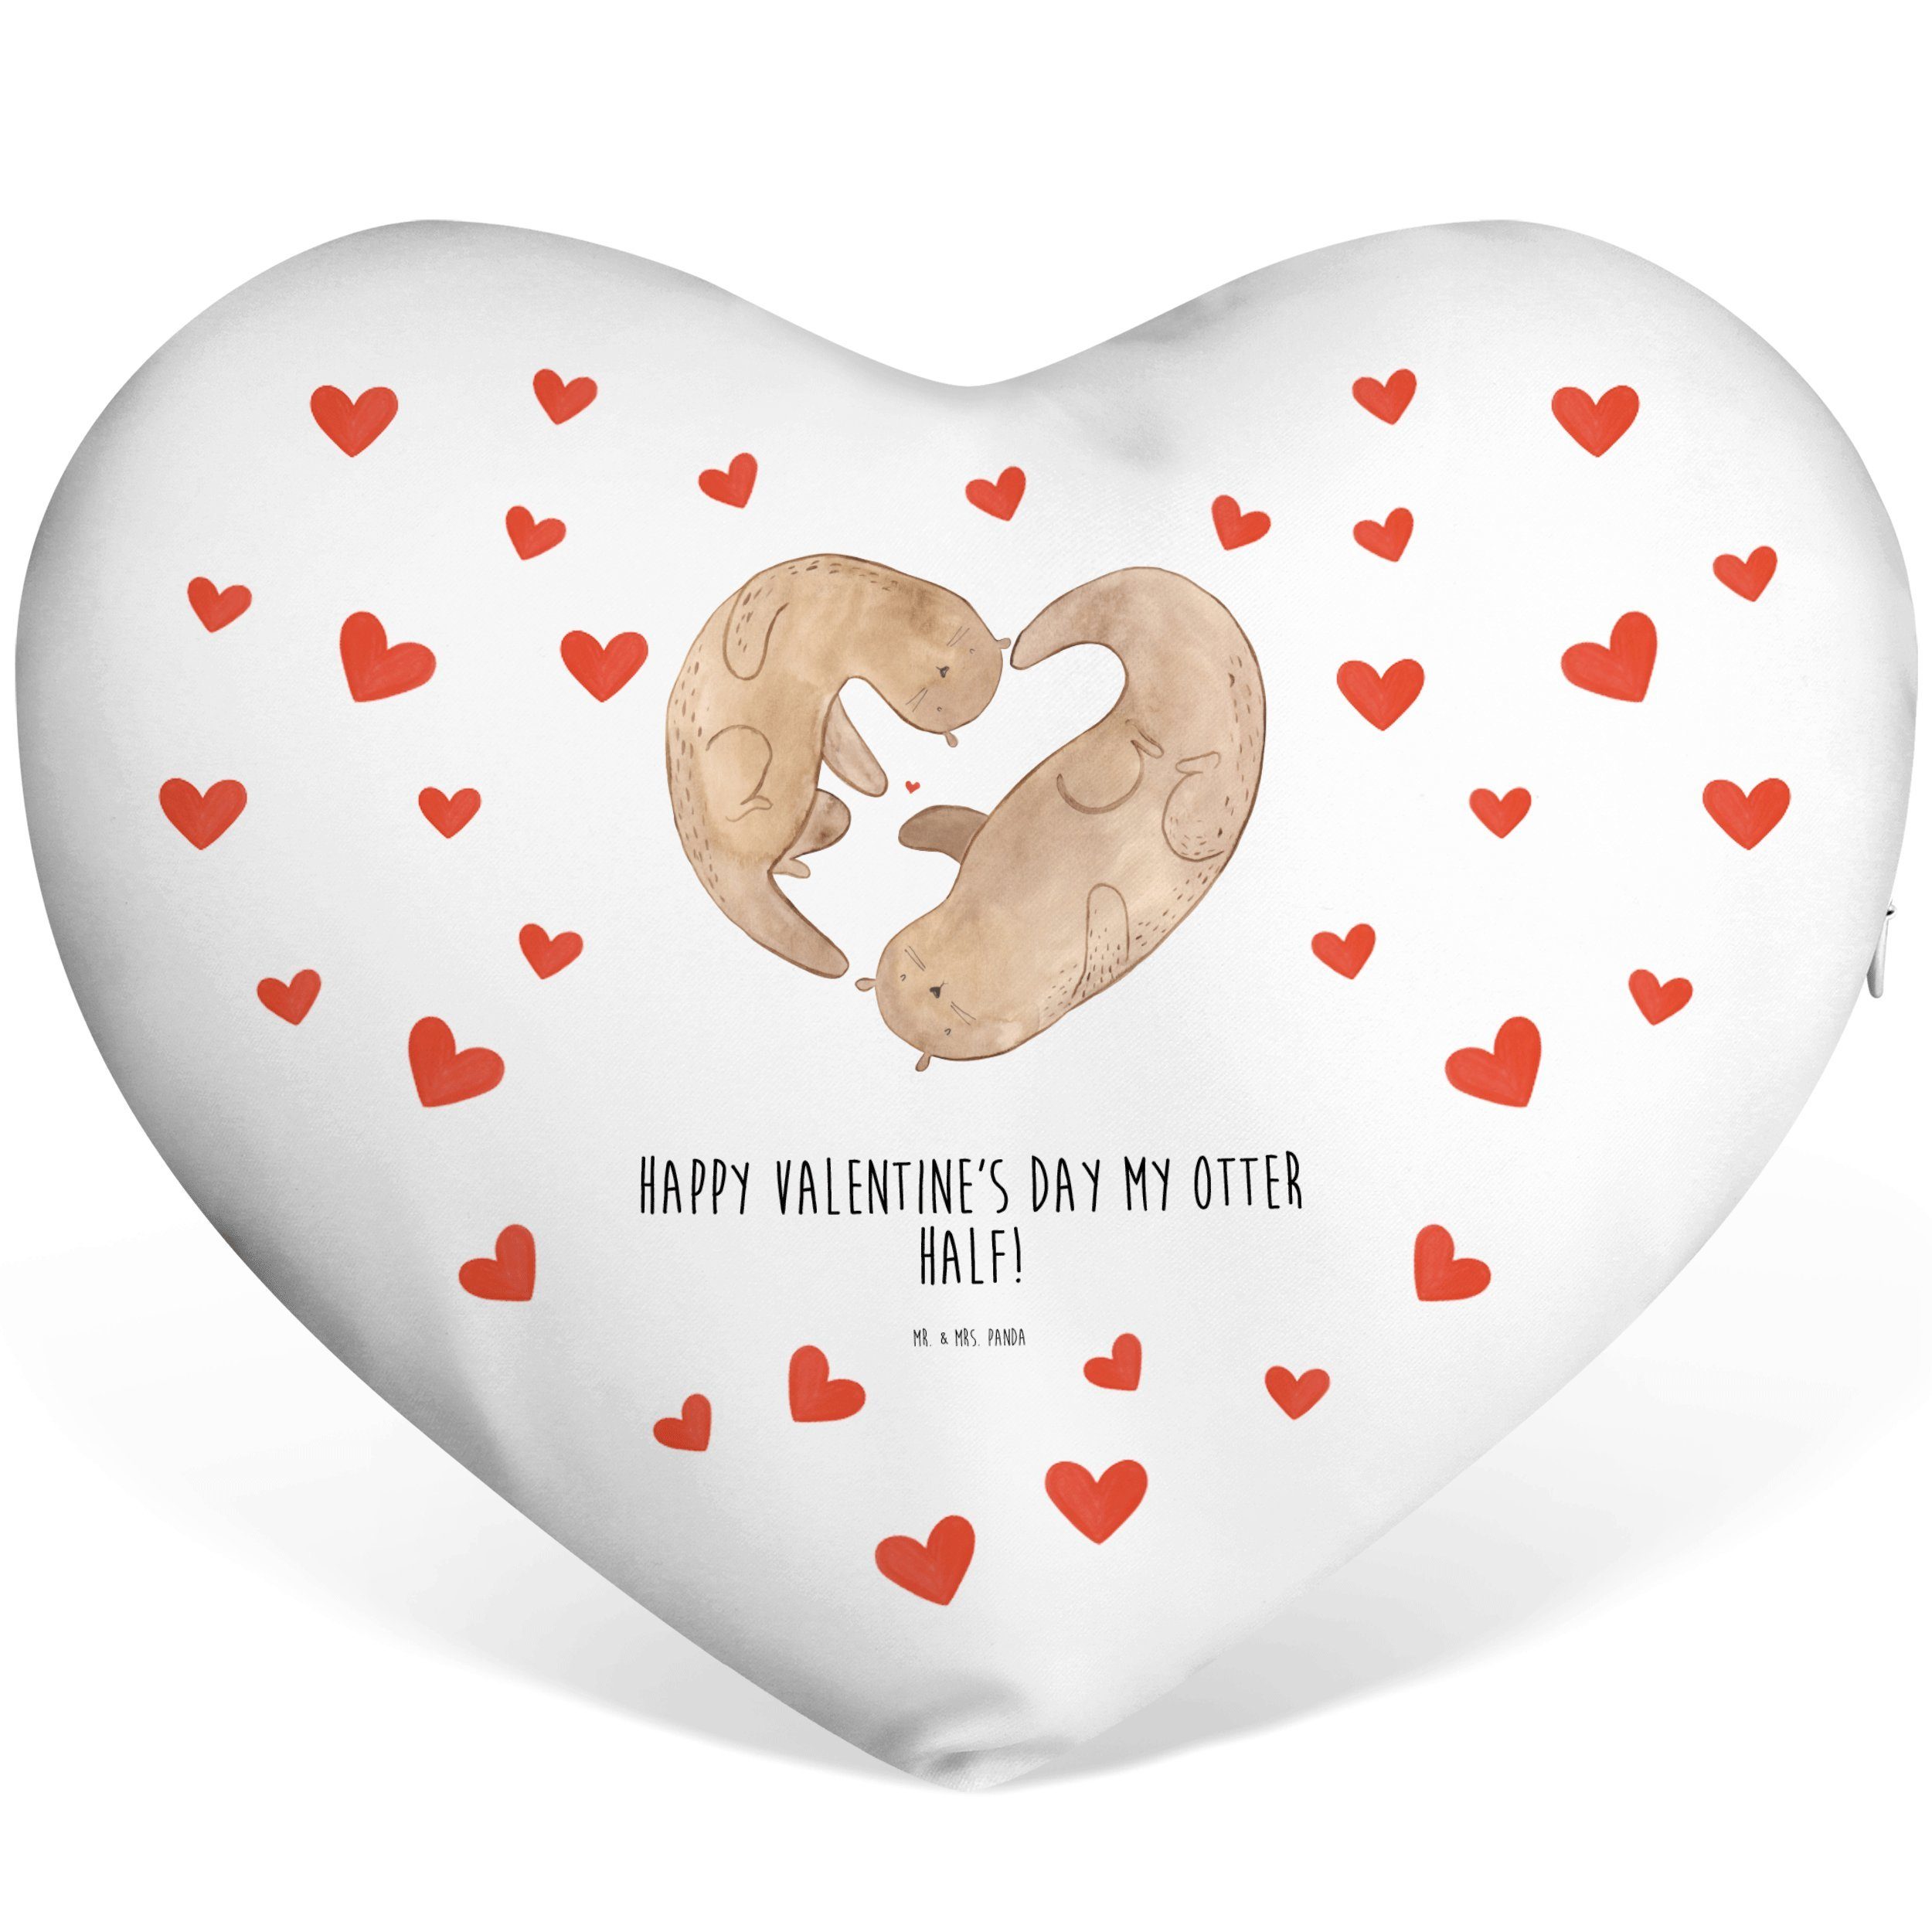 Mr. & Mrs. Panda Dekokissen Valentine - Otter Geschenk Weiß - Herzkissen, Geschenk, Herzform, für